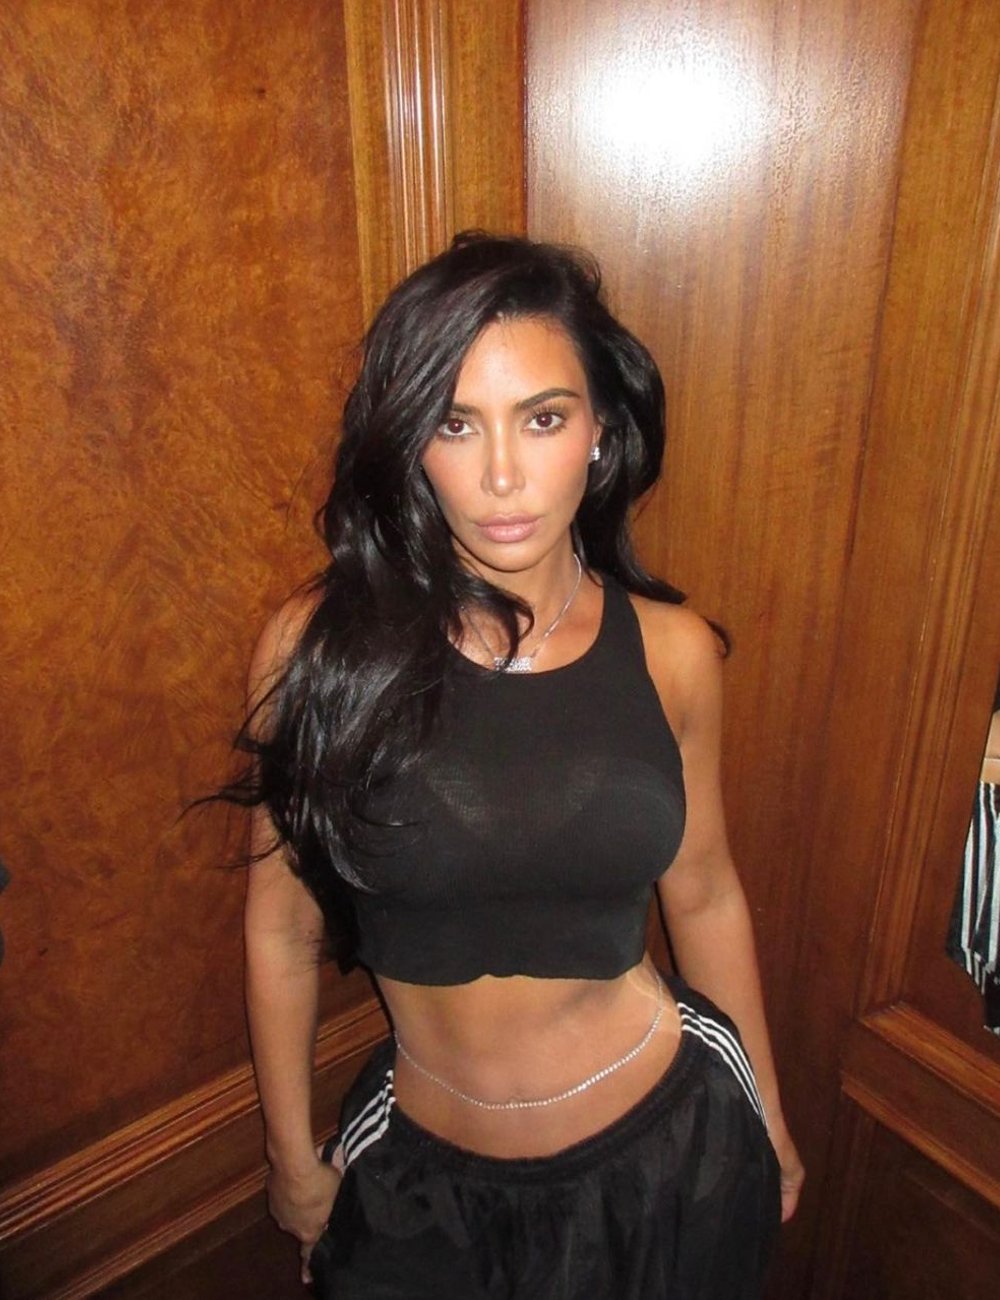 Kim Kardashian - astrologia - Zendaya - previsões - instagram - https://stealthelook.com.br